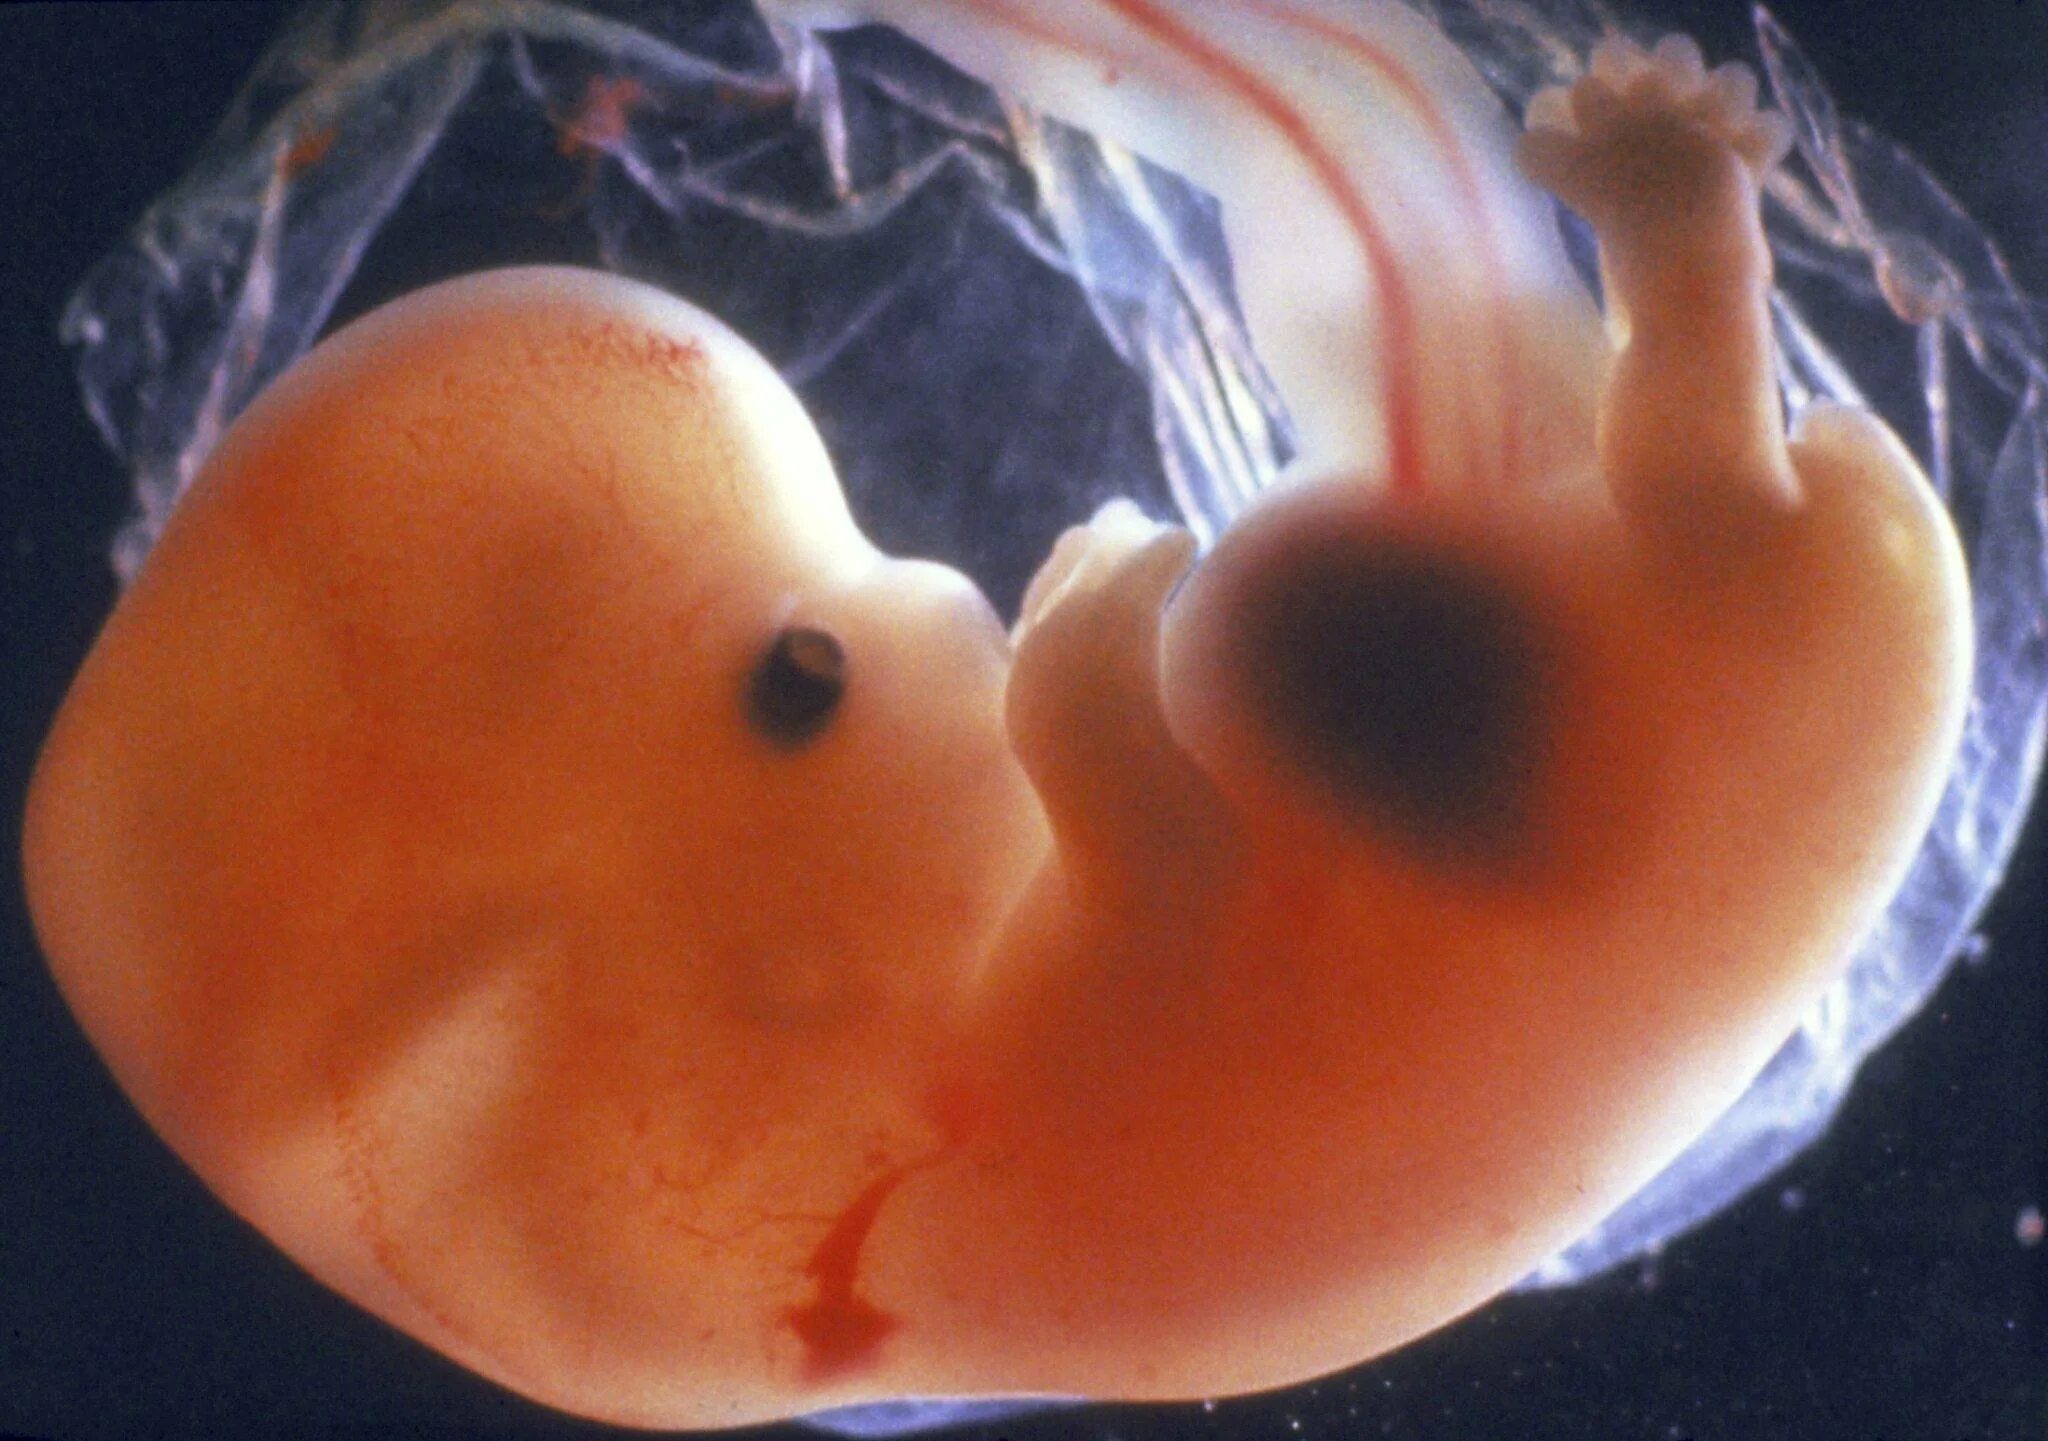 Эмбрион на 6 неделе беременности. Эмбрион на 7 неделе беременности. 5 6 Недель беременности фото эмбриона. Беременность 6 недель фото эмбриона. Ребенок 1 2 недели беременности